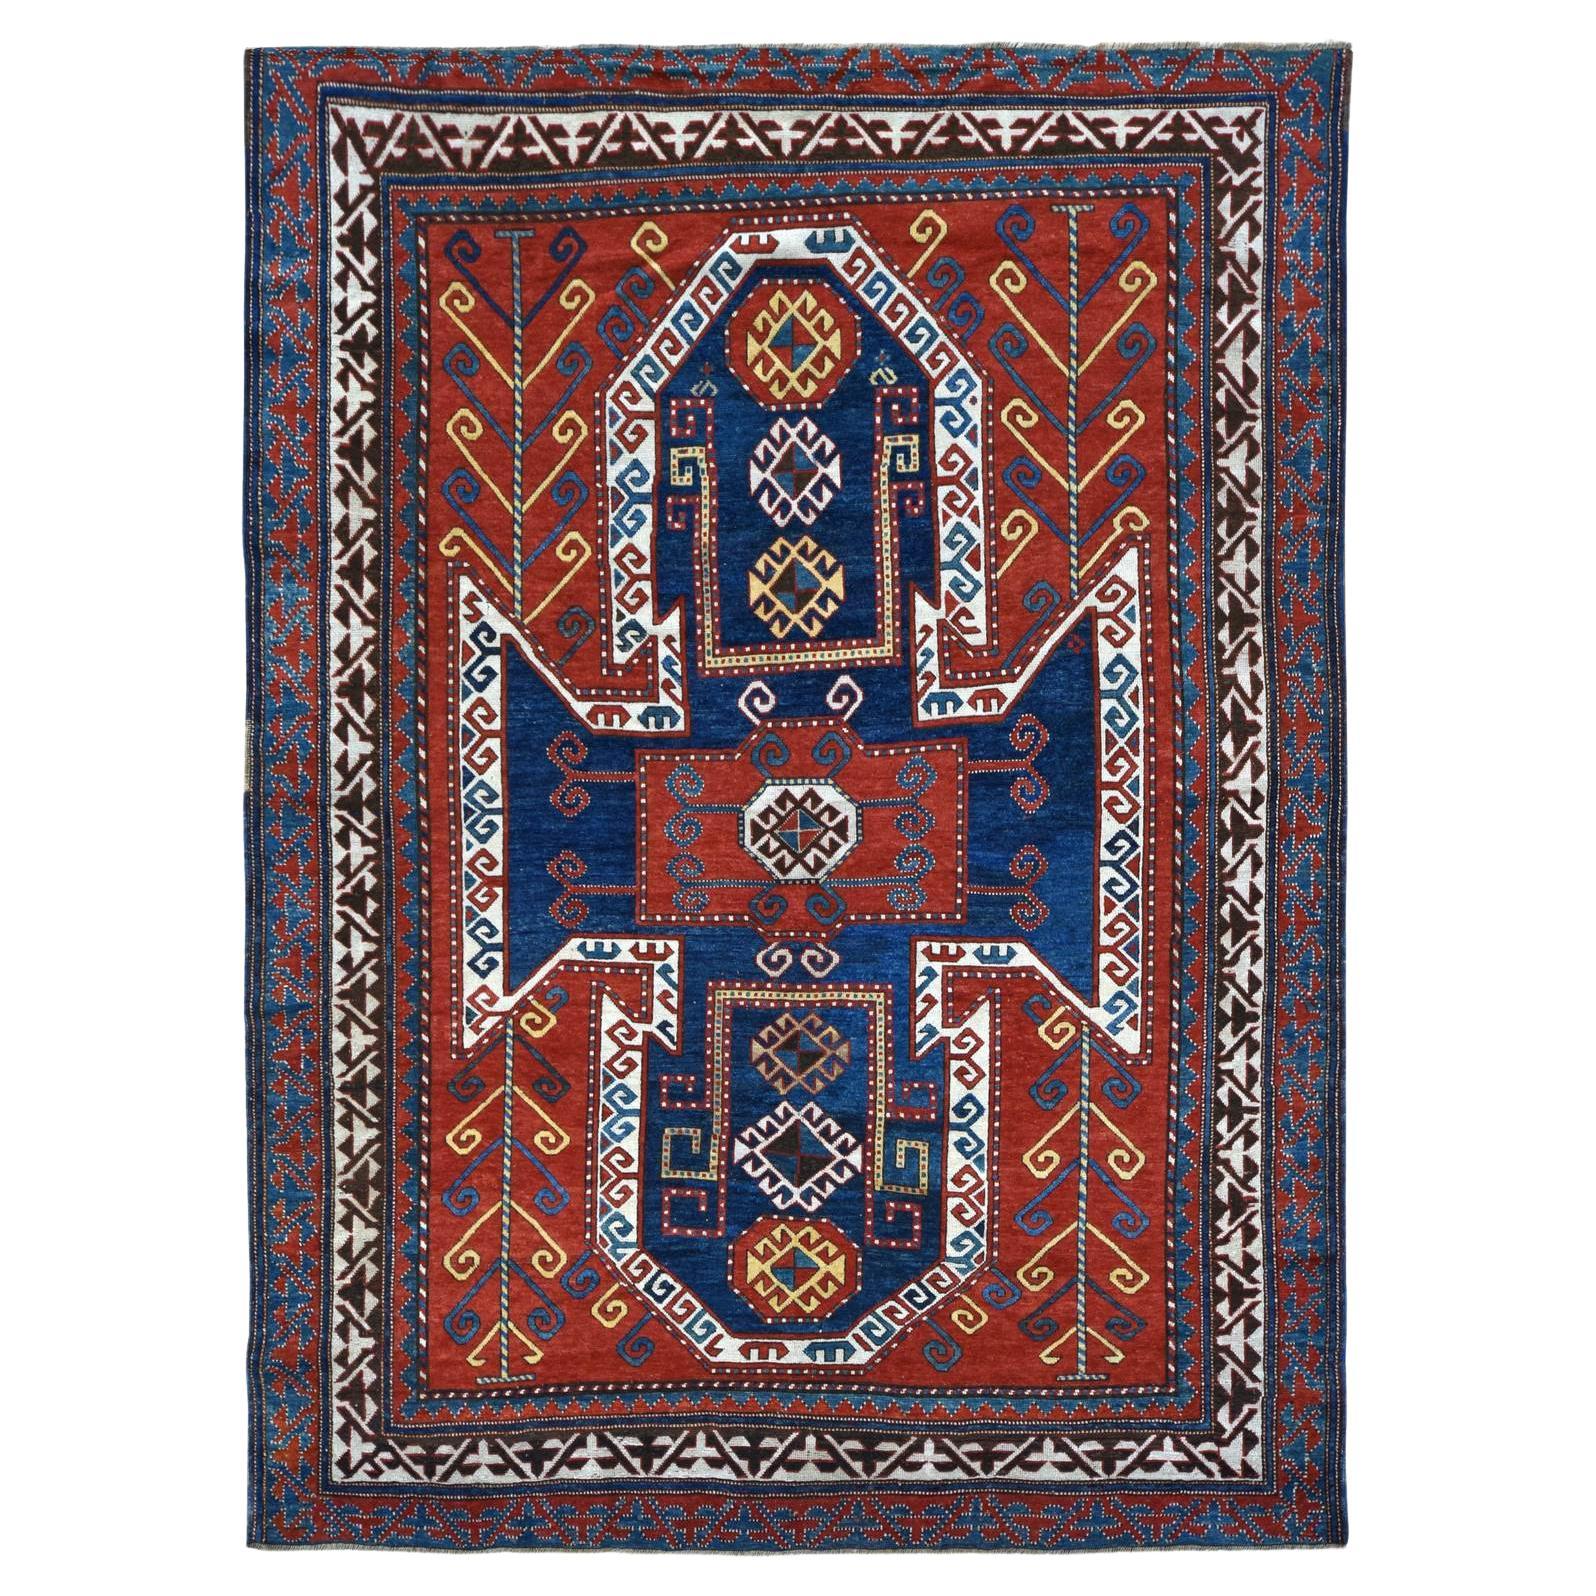 Kazakhstani Rugs and Carpets